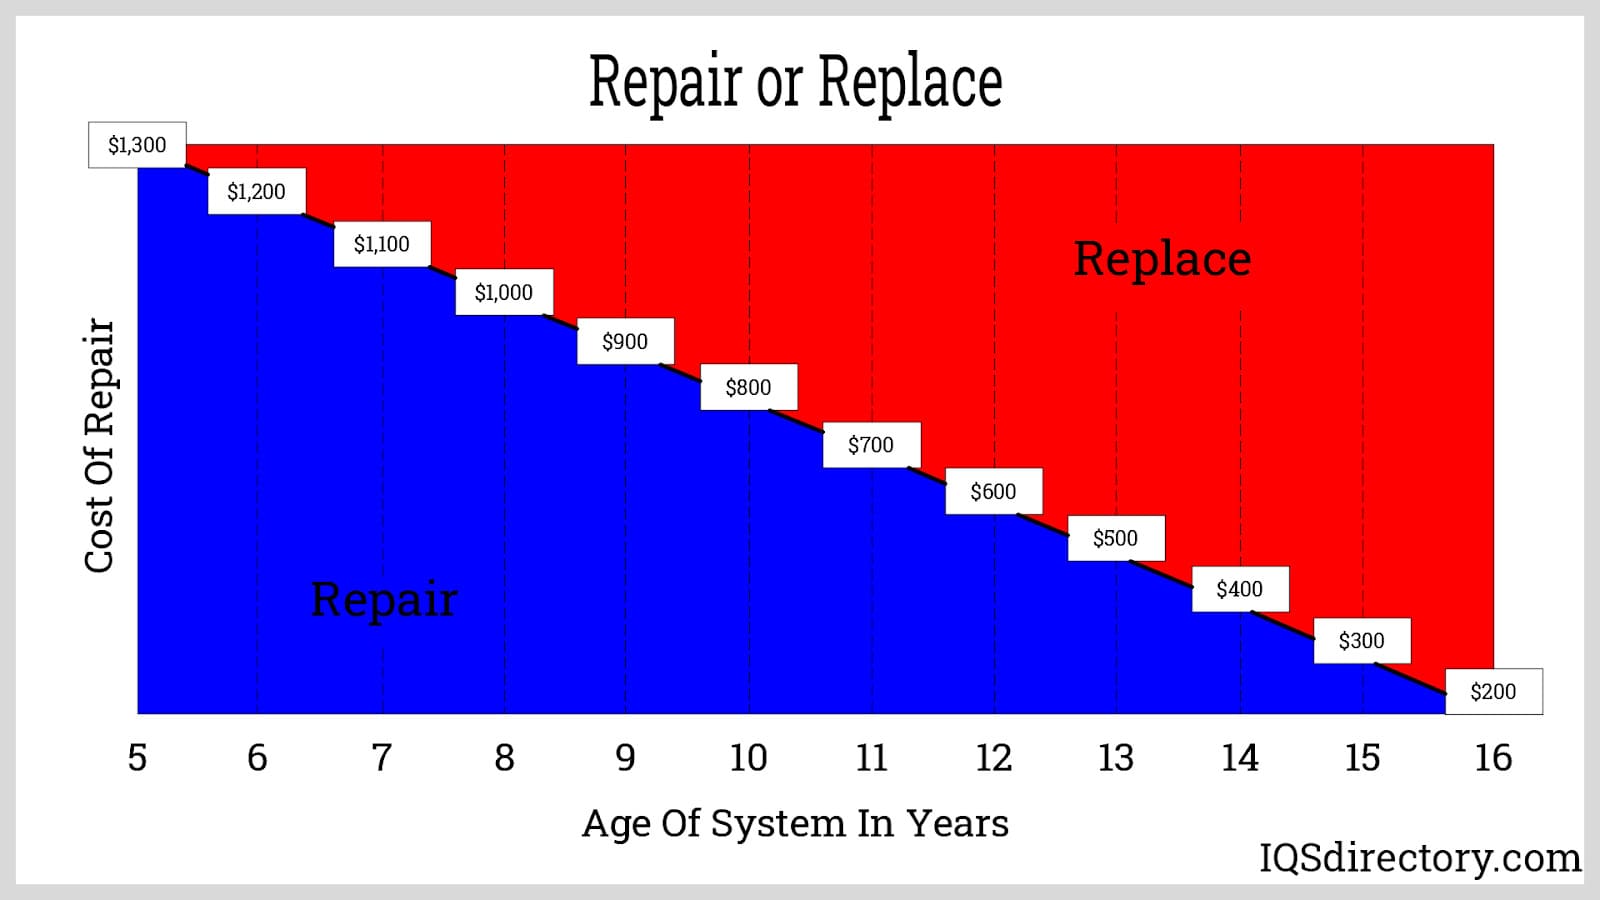 Repair/Replace Table